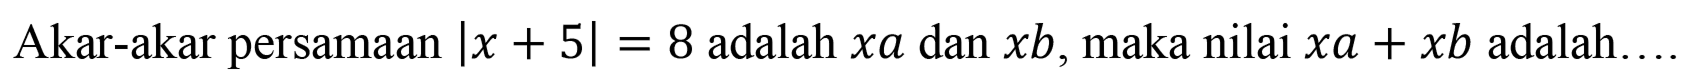 Akar-akar persamaan Ix + 5|=8 adalah xa dan xb, maka nilai xa+xb adalah ...